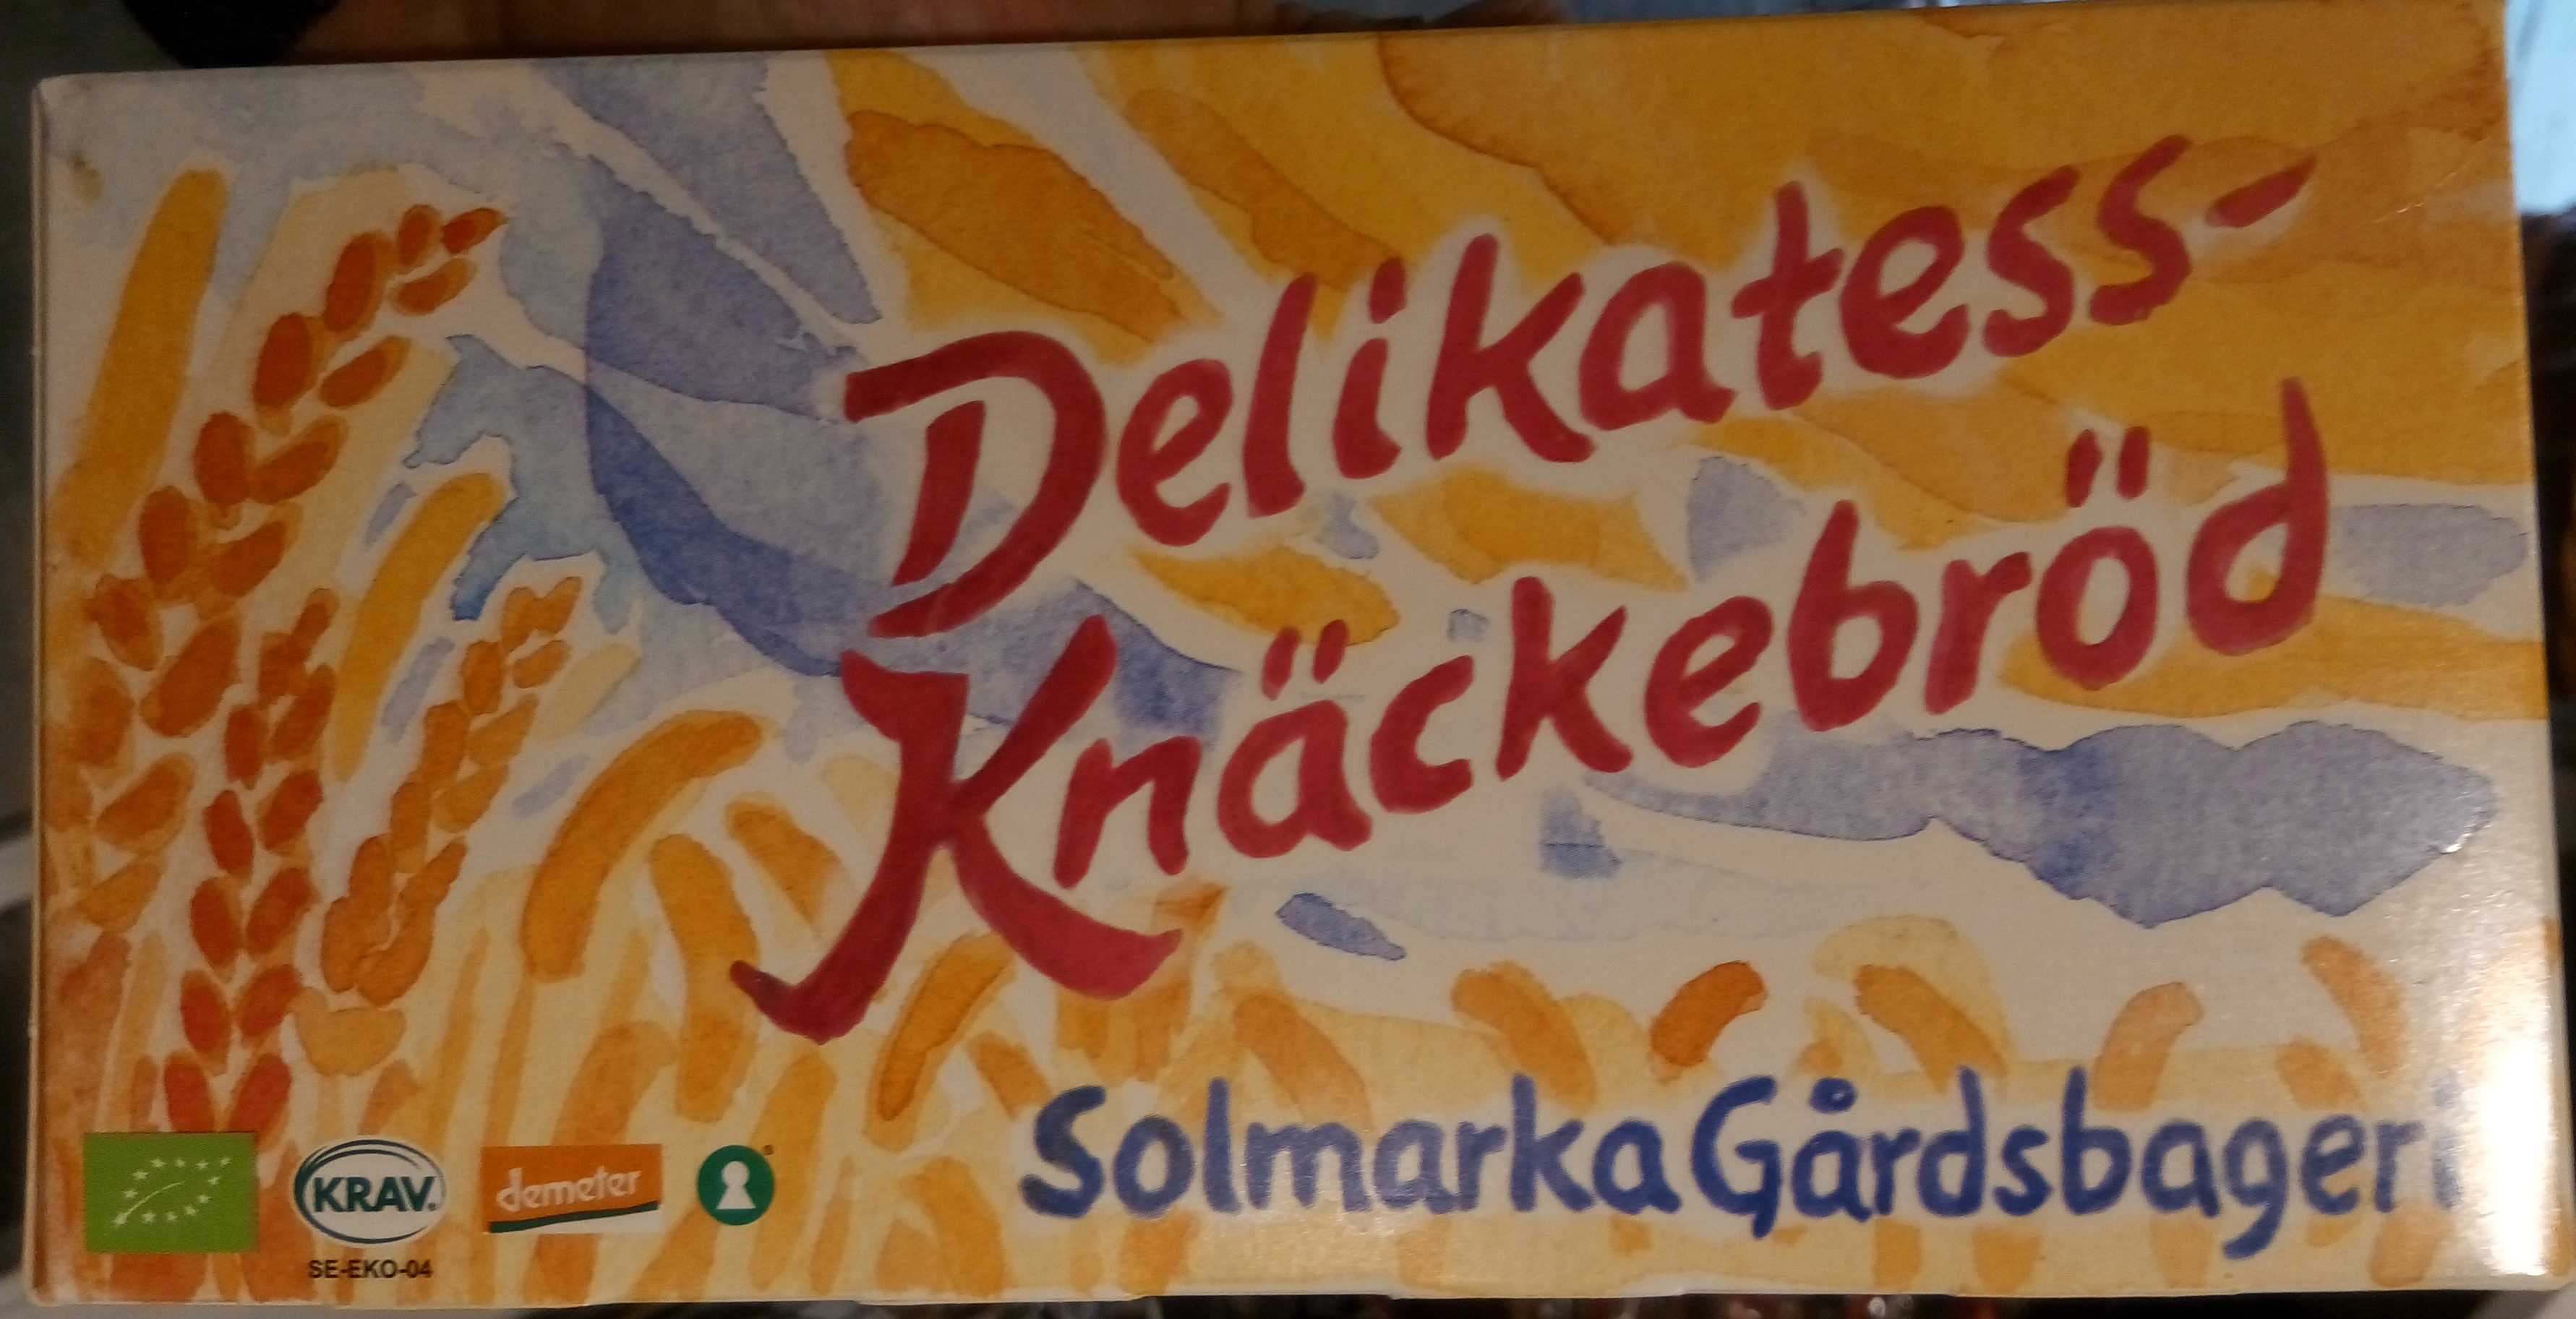 Delikatess-Knäckebröd - Produkt - sv